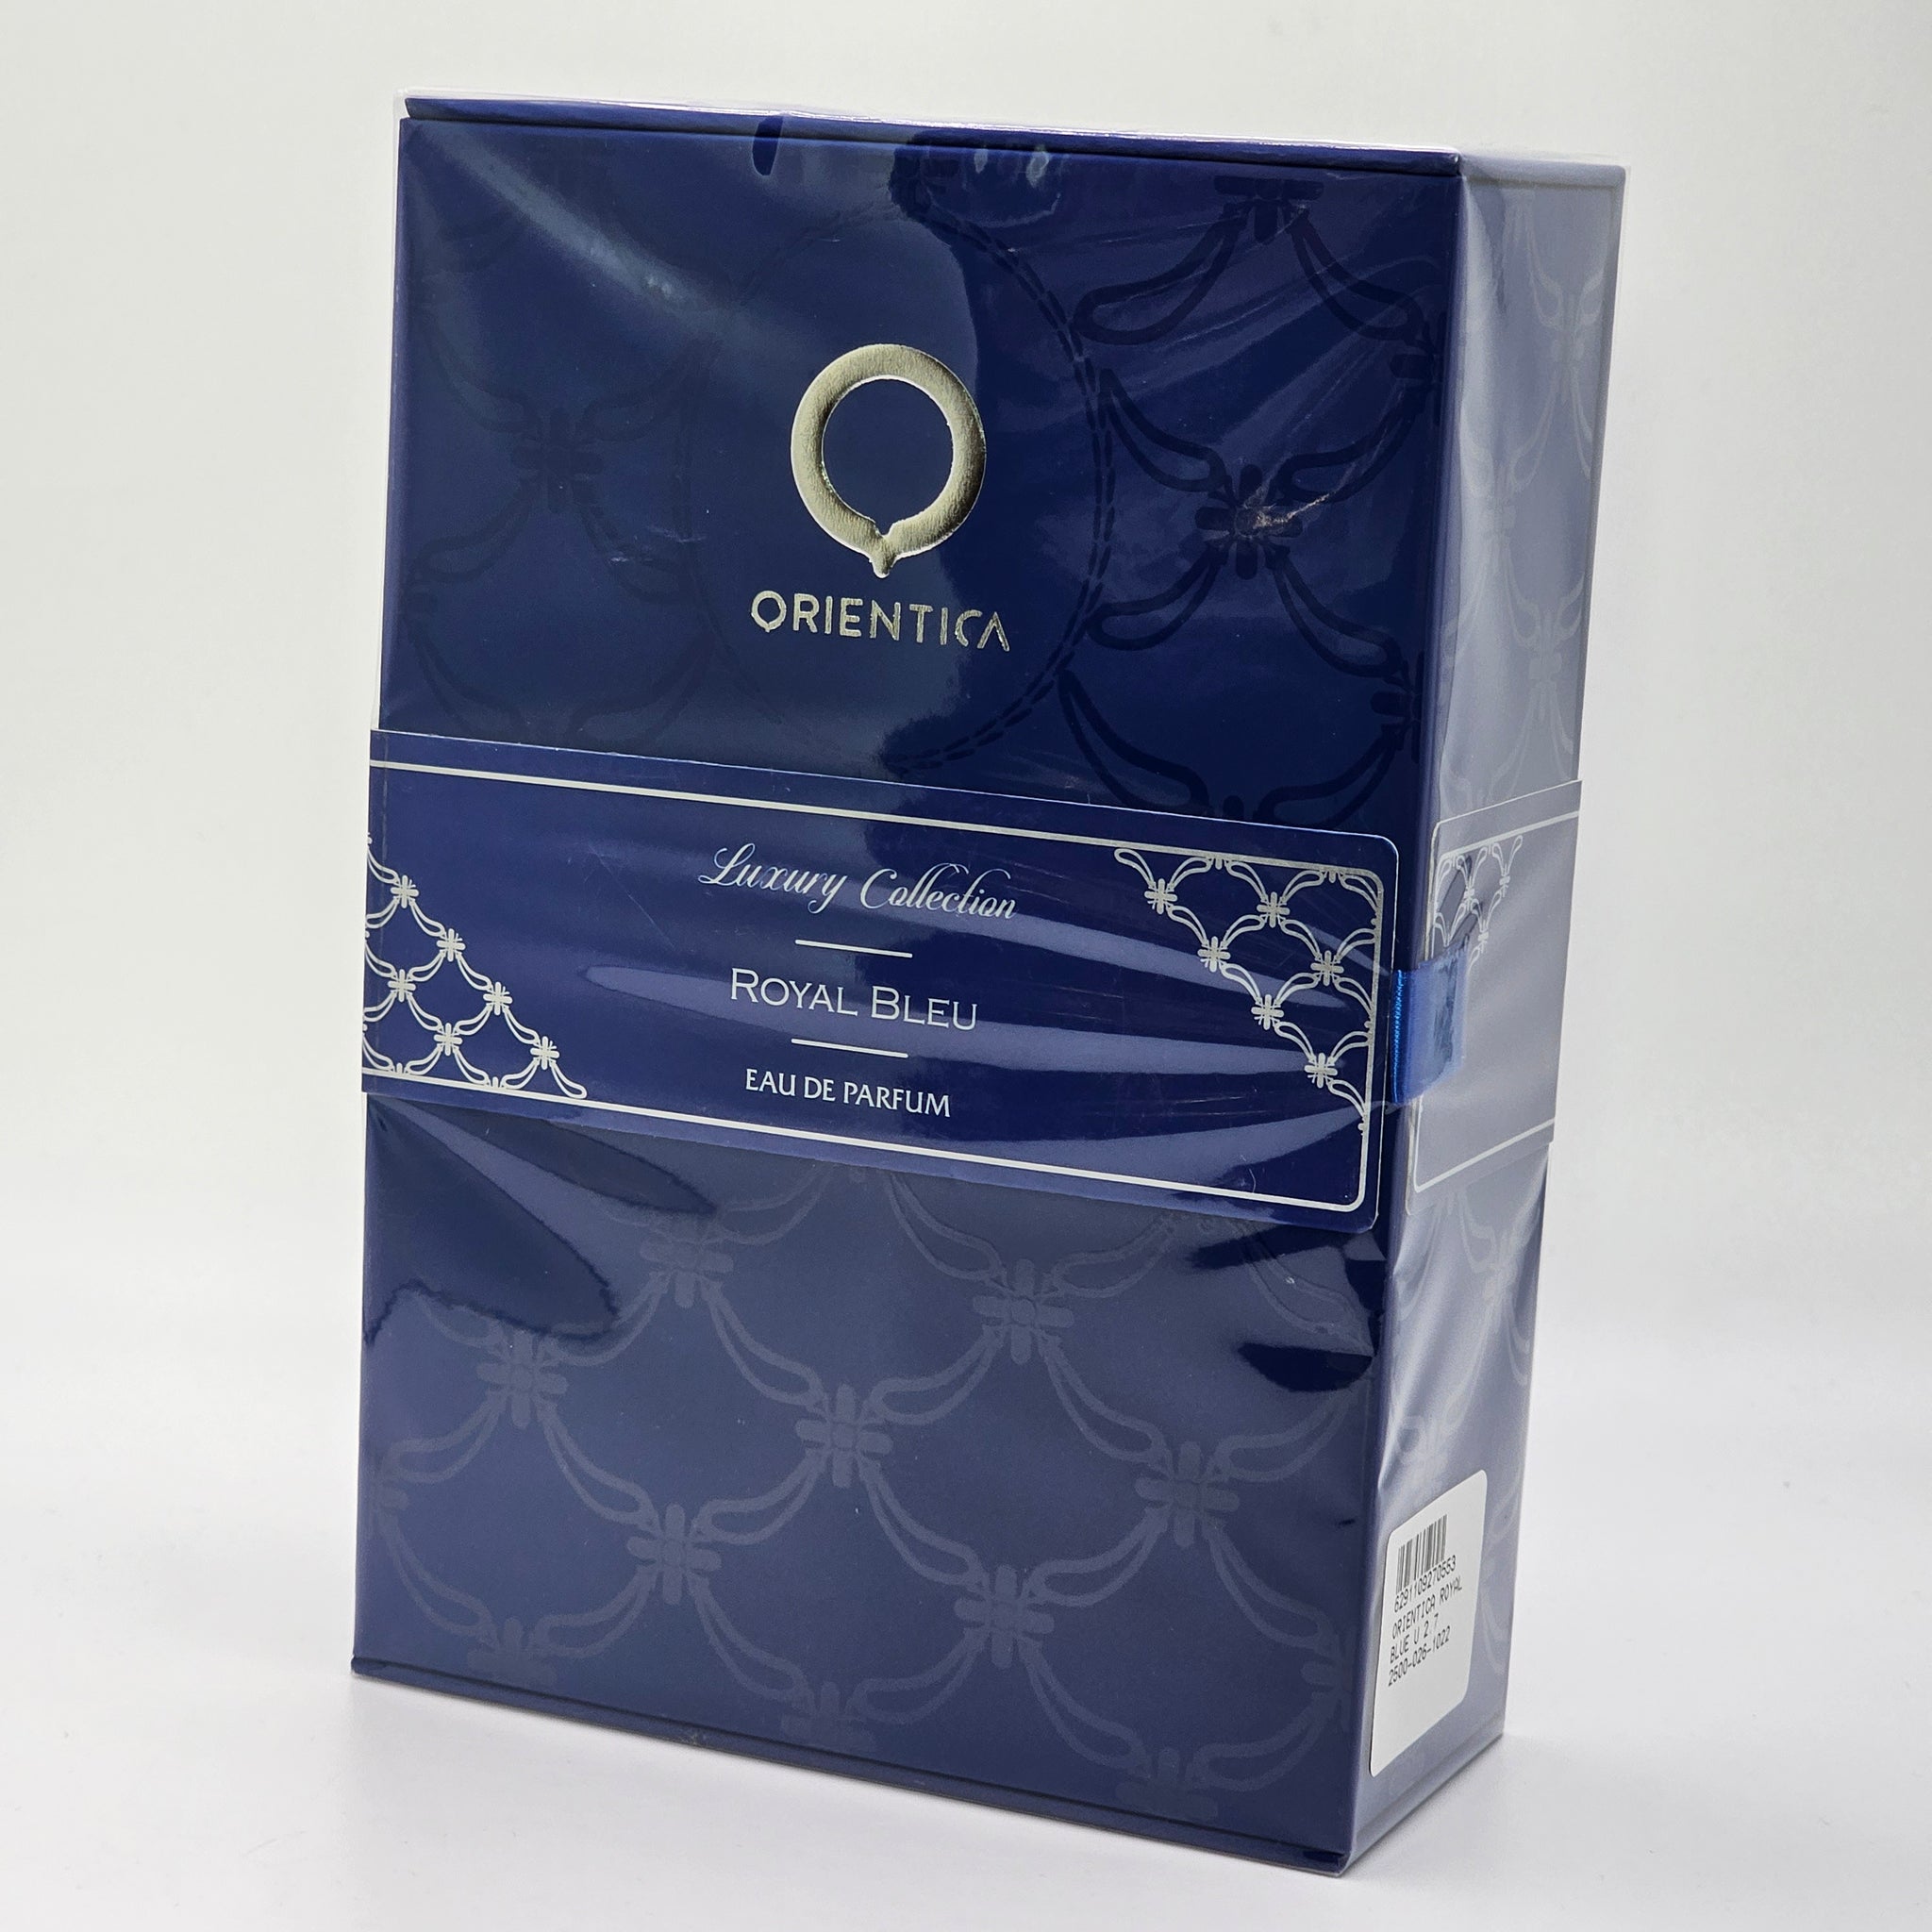 Orientica Royal Bleu Eau De Parfum Luxury Collection Spray 2.7 Oz Unisex